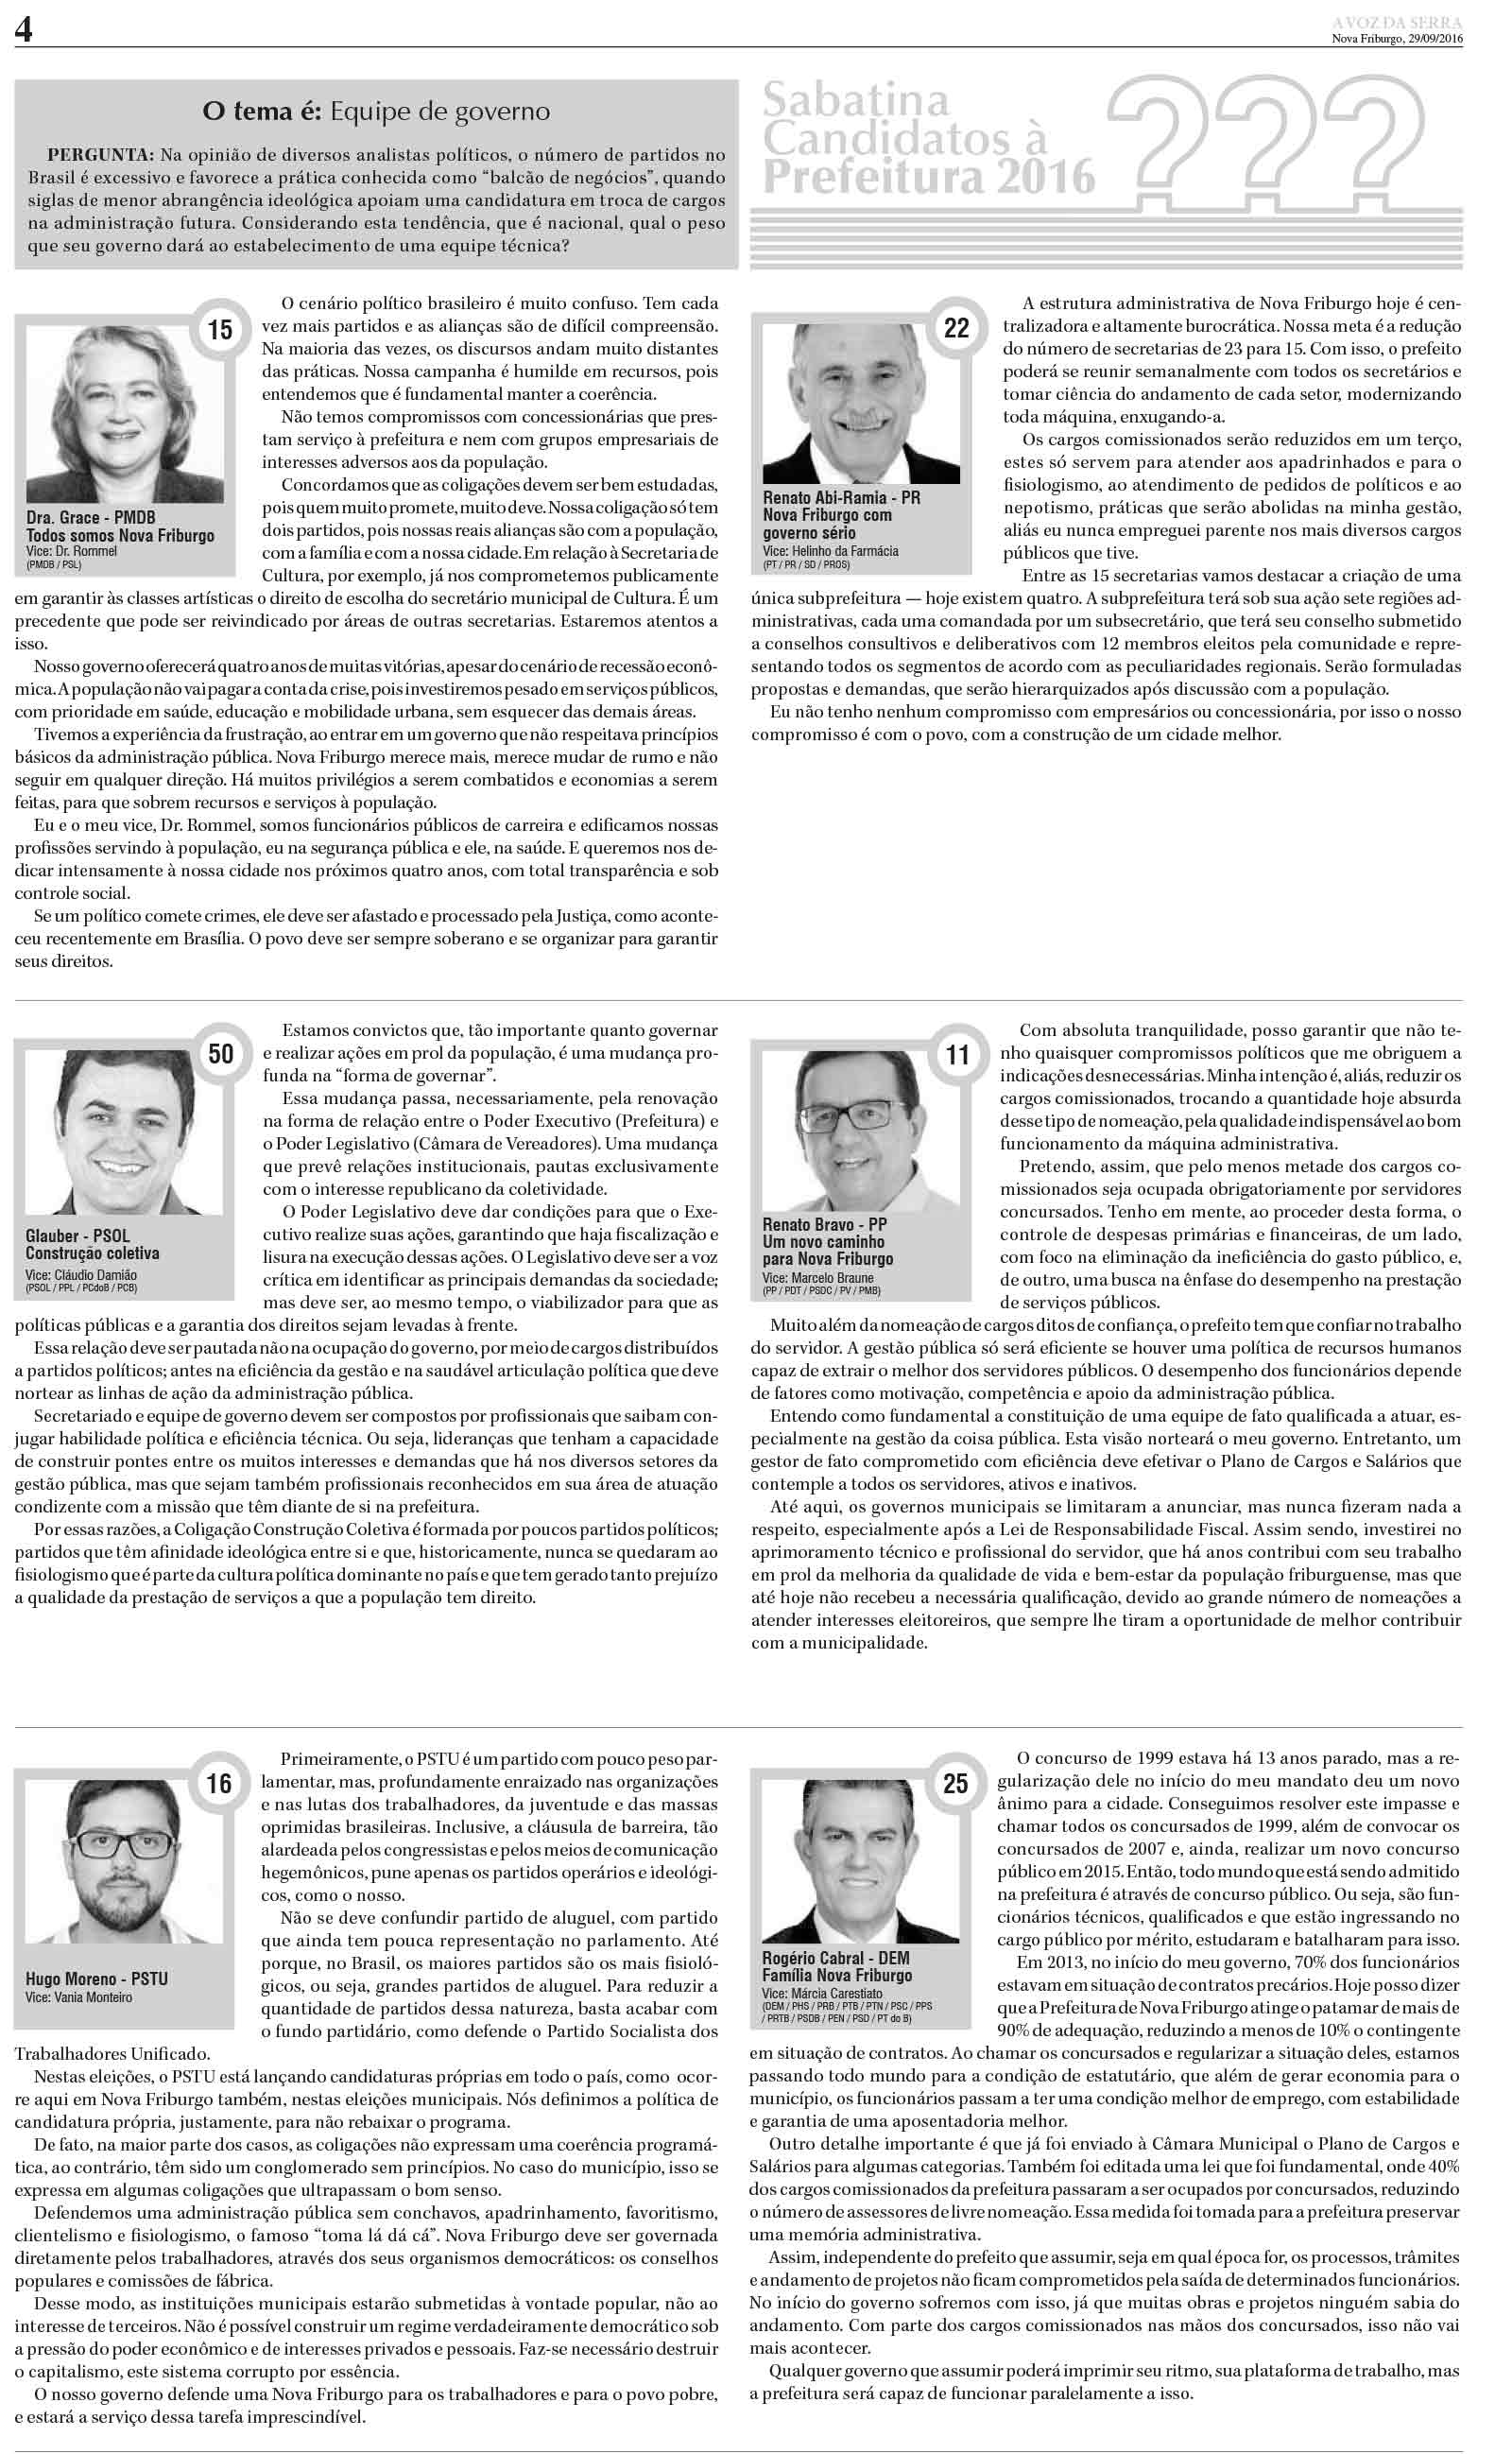 Edição De 29 De Setembro De 2016 Jornal A Voz Da Serra